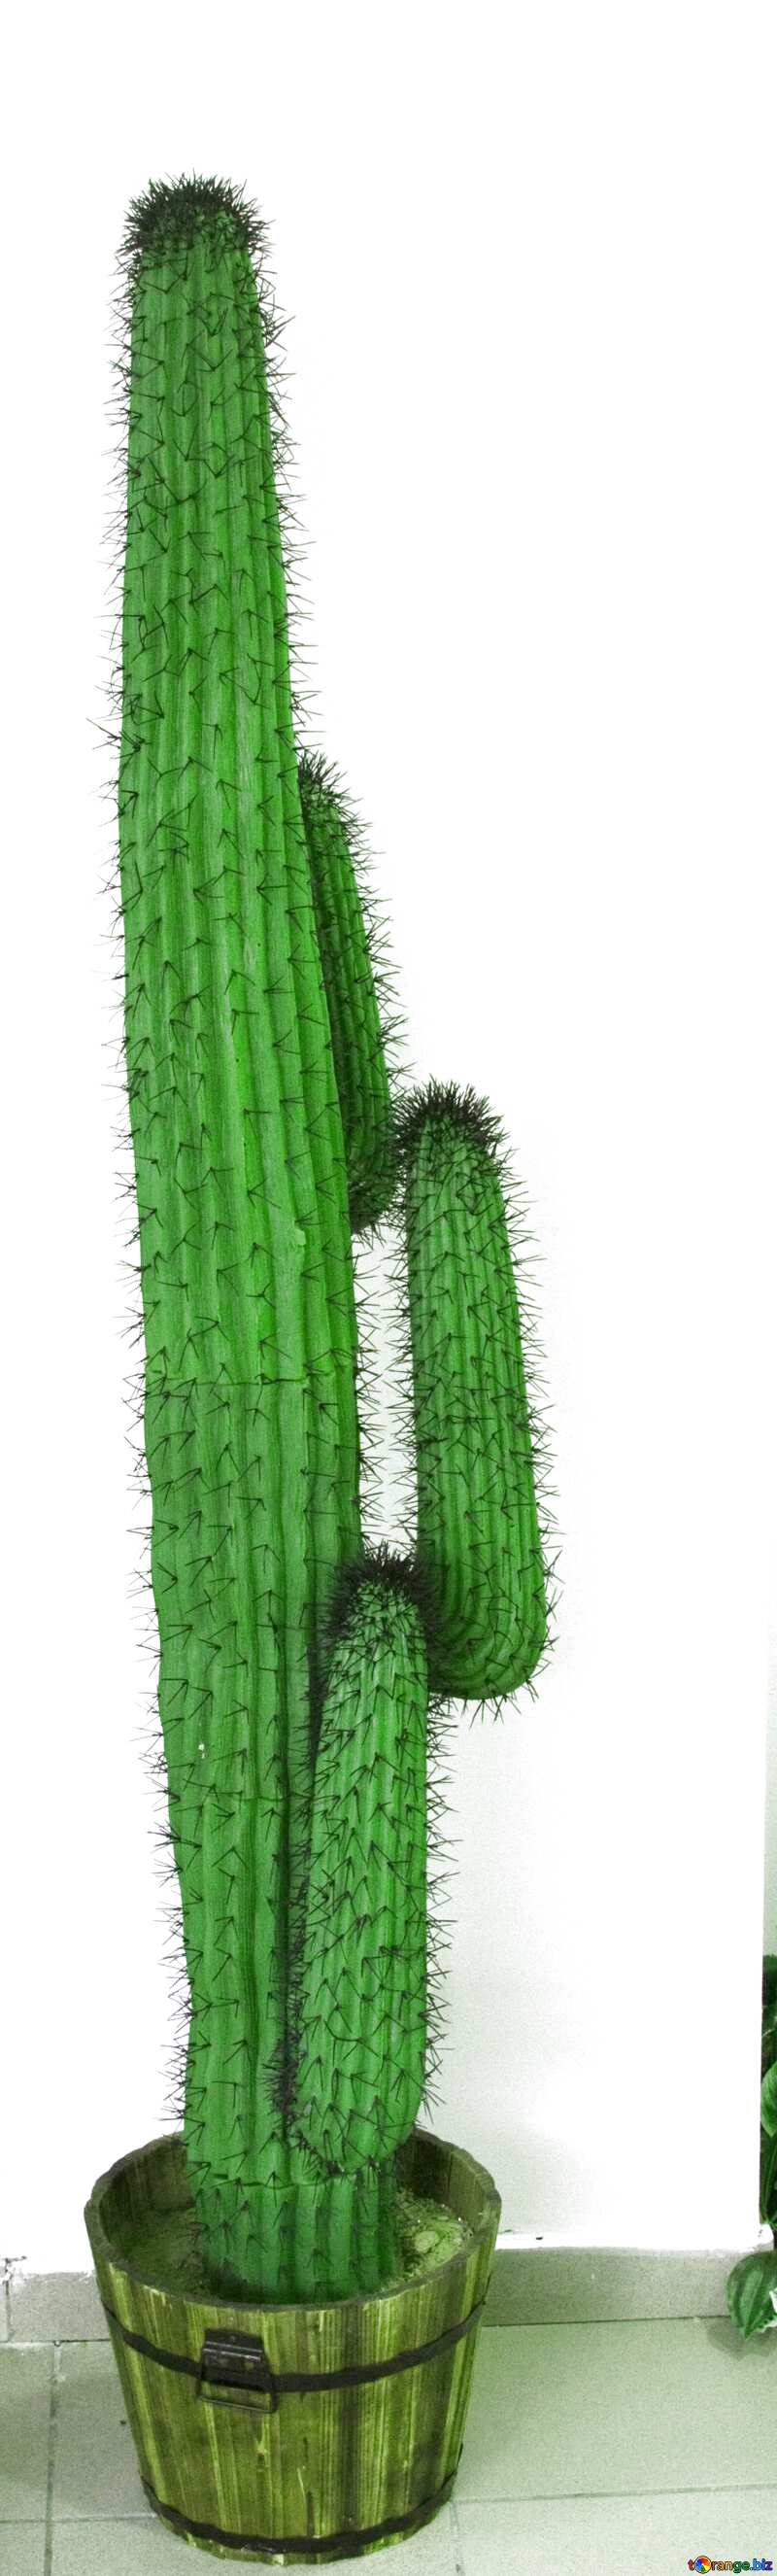 Cactus on white background №11323